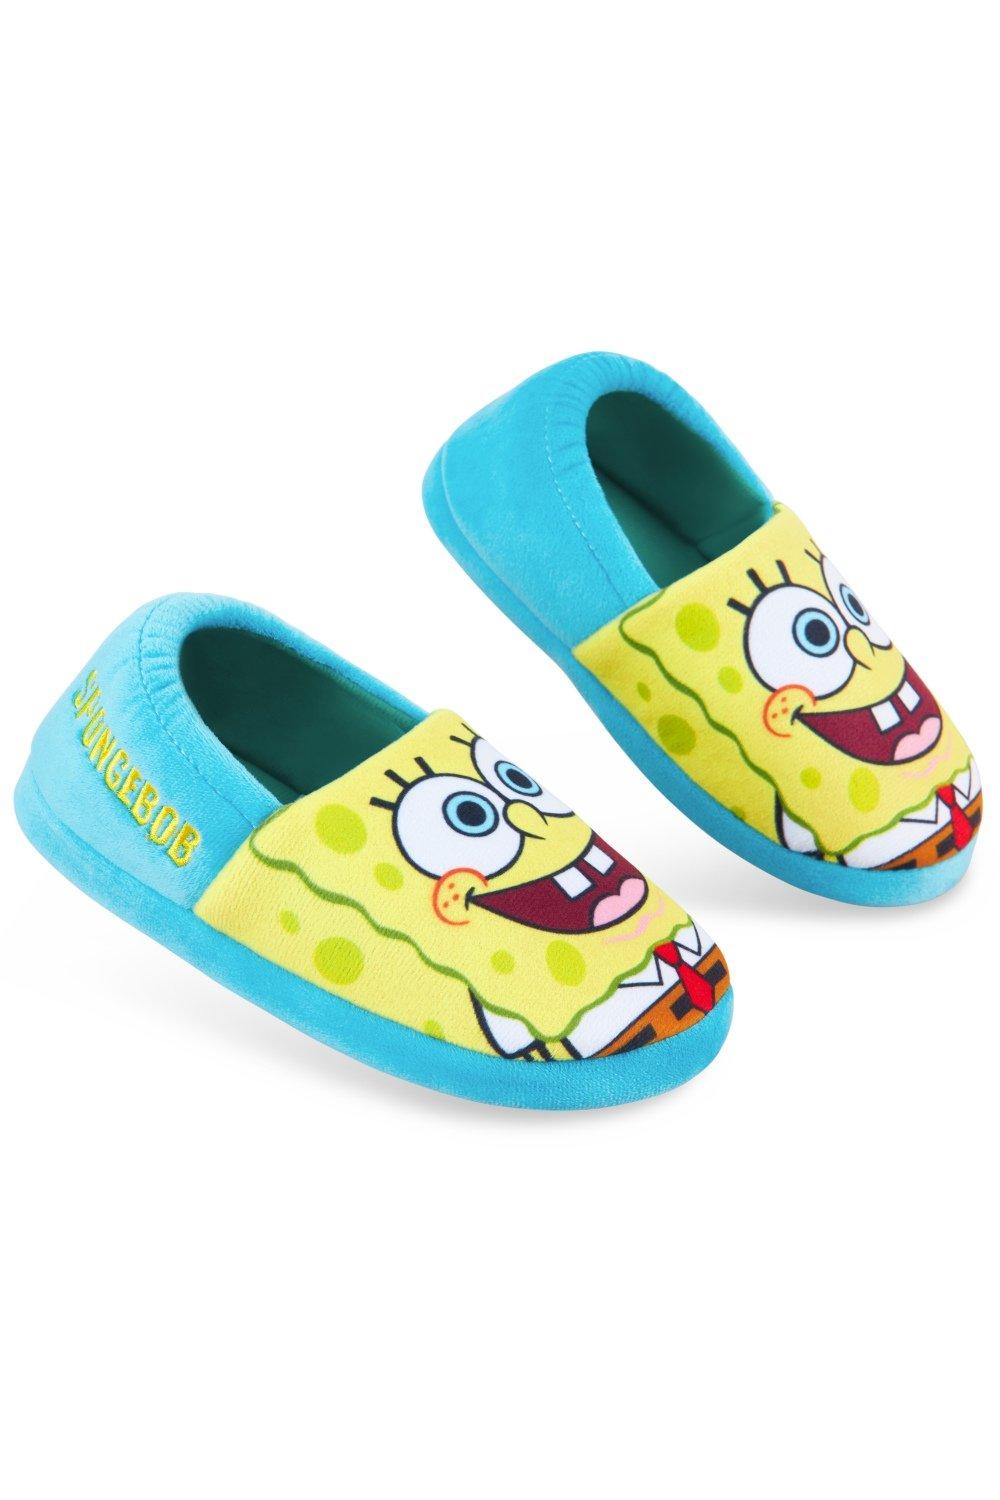 Алин тапочки Sponge Bob Square Pants, мультиколор милые детские носки тапочки для мальчиков и девочек нескользящие эластичные носки с героями мультфильмов для малышей обувь для первых шаг